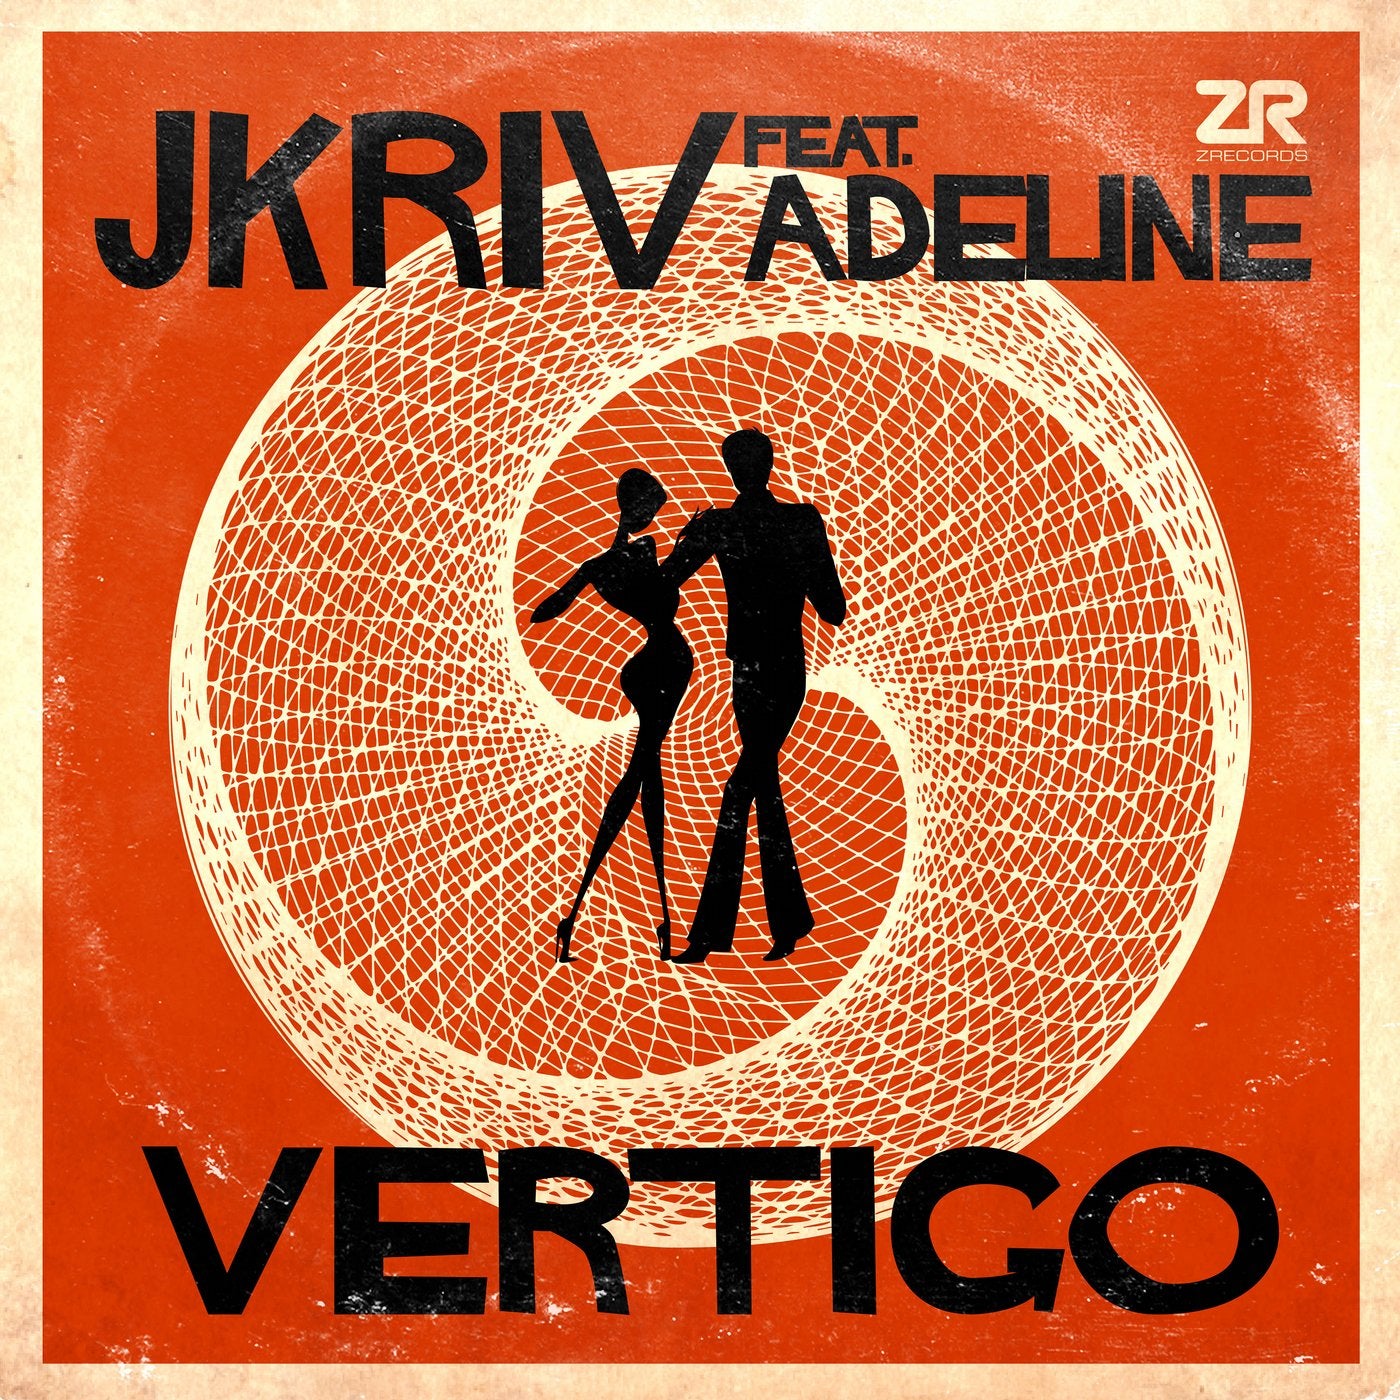 Vertigo. Vertigo Music. Vertigo альбом. Vertigo песня. Dick night